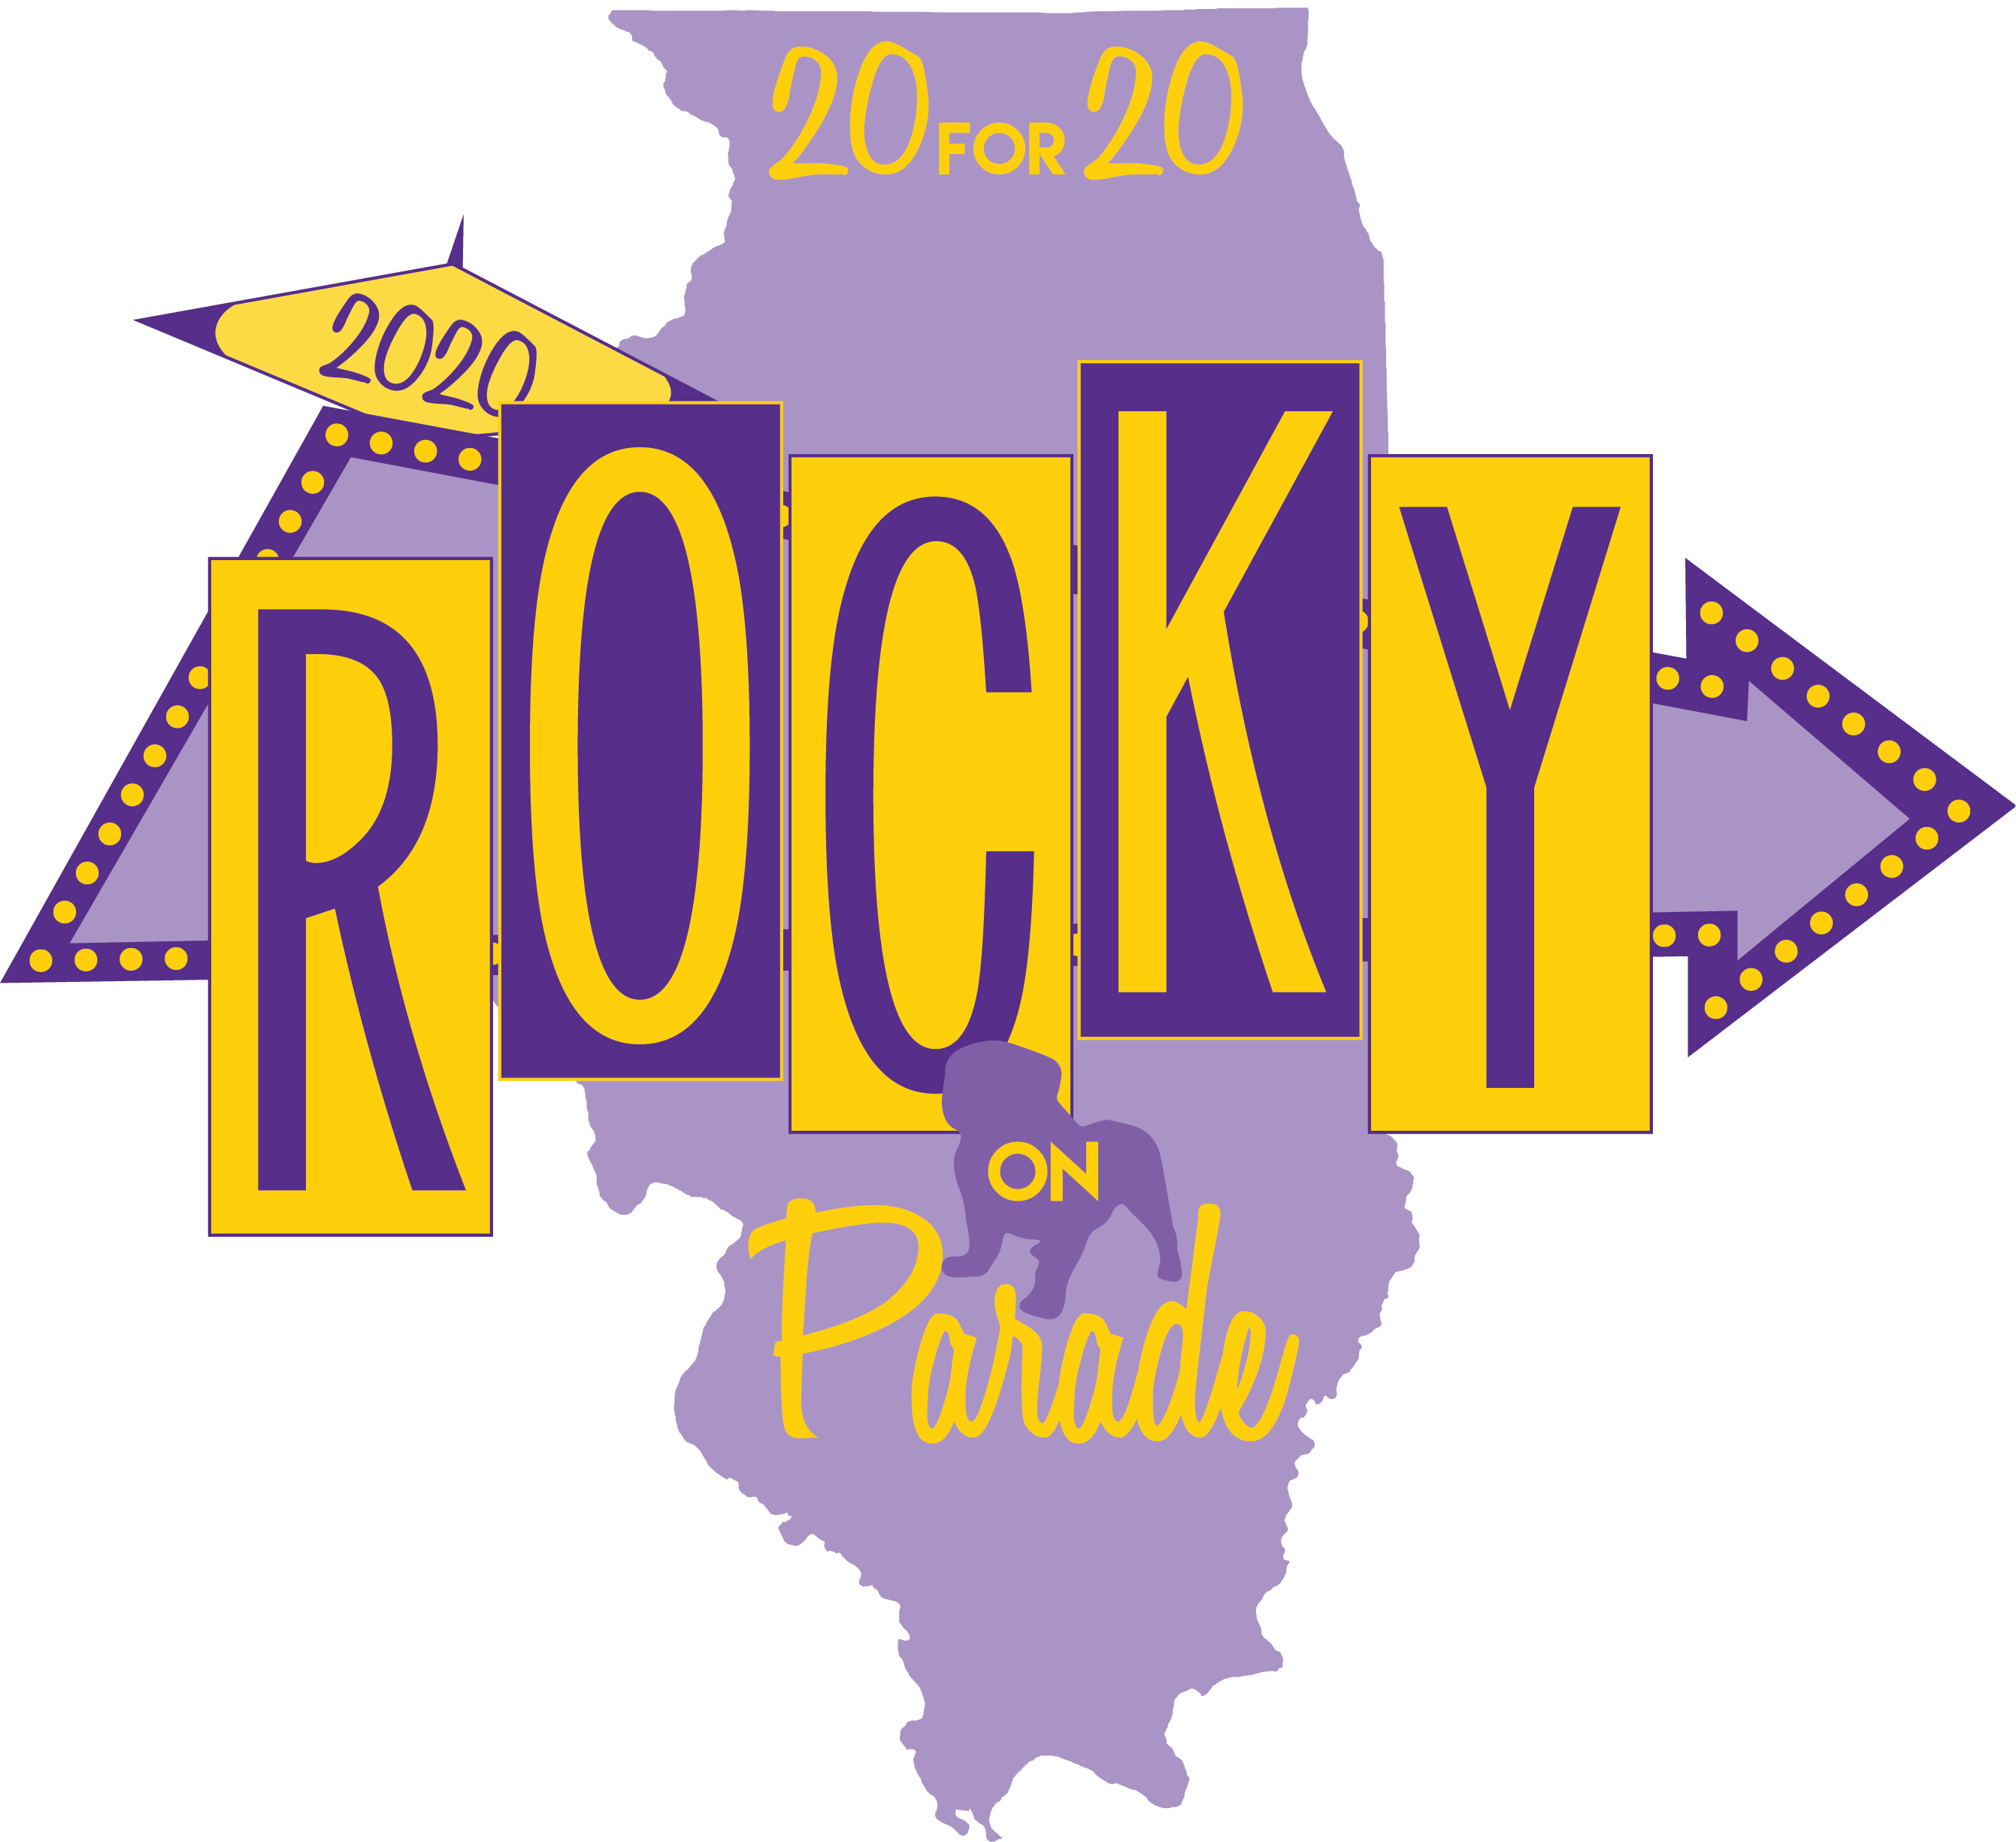 2017 Rocky on Parade logo